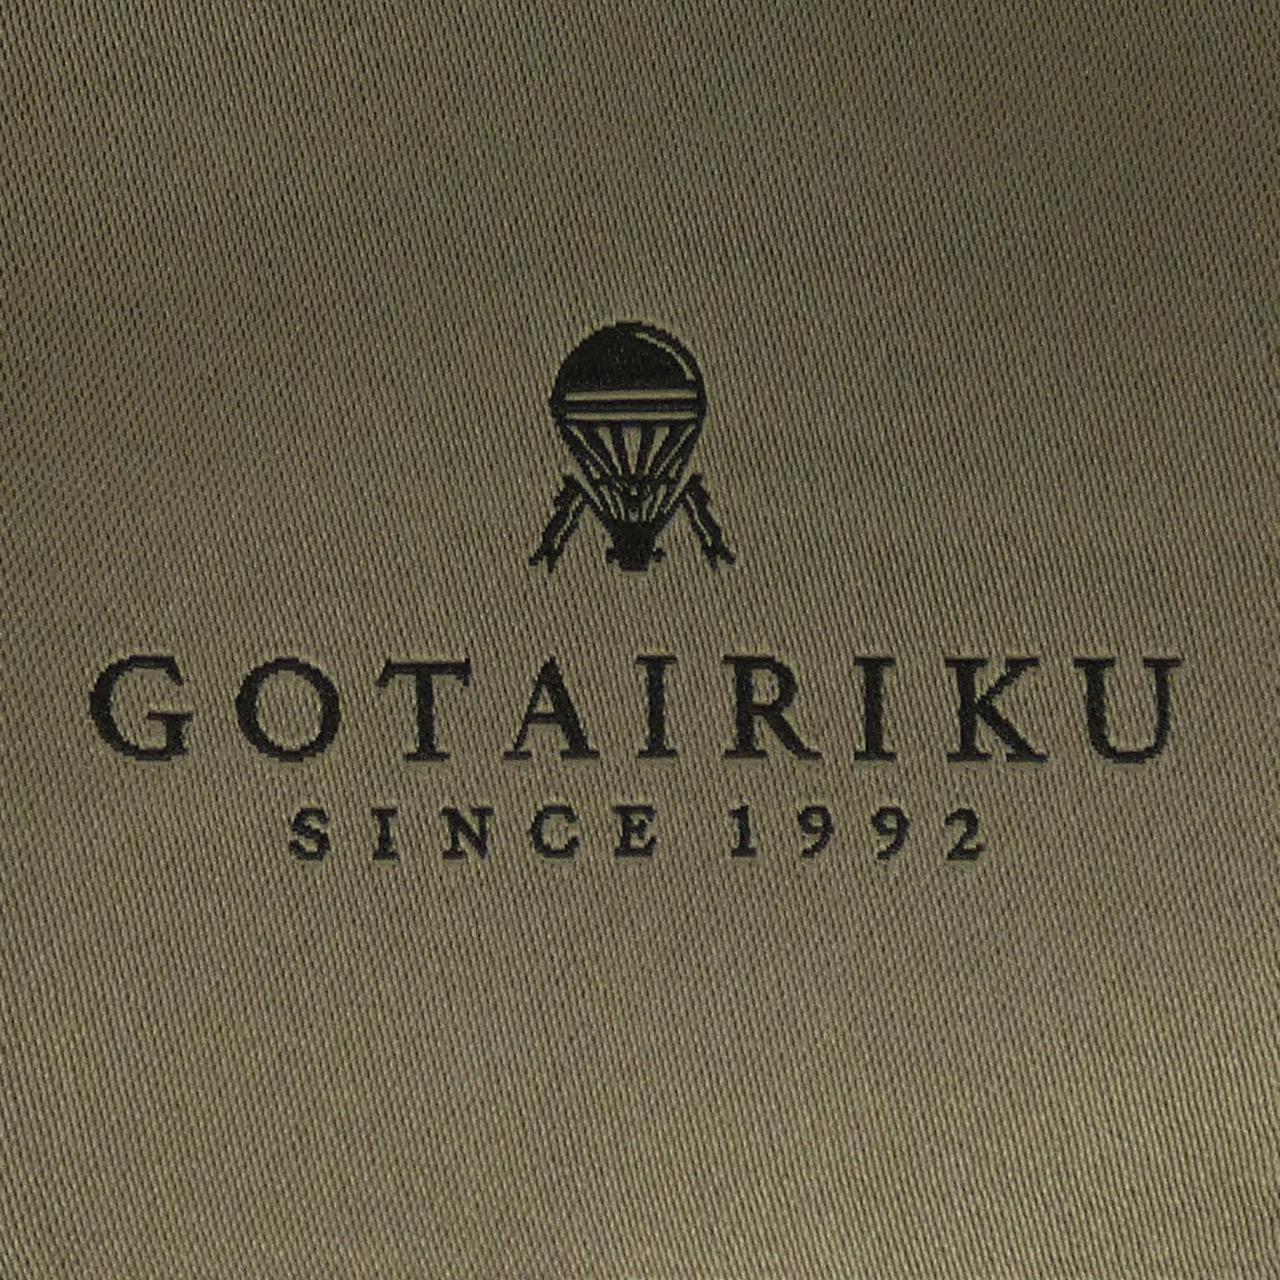 GOTAIRIKU スーツ